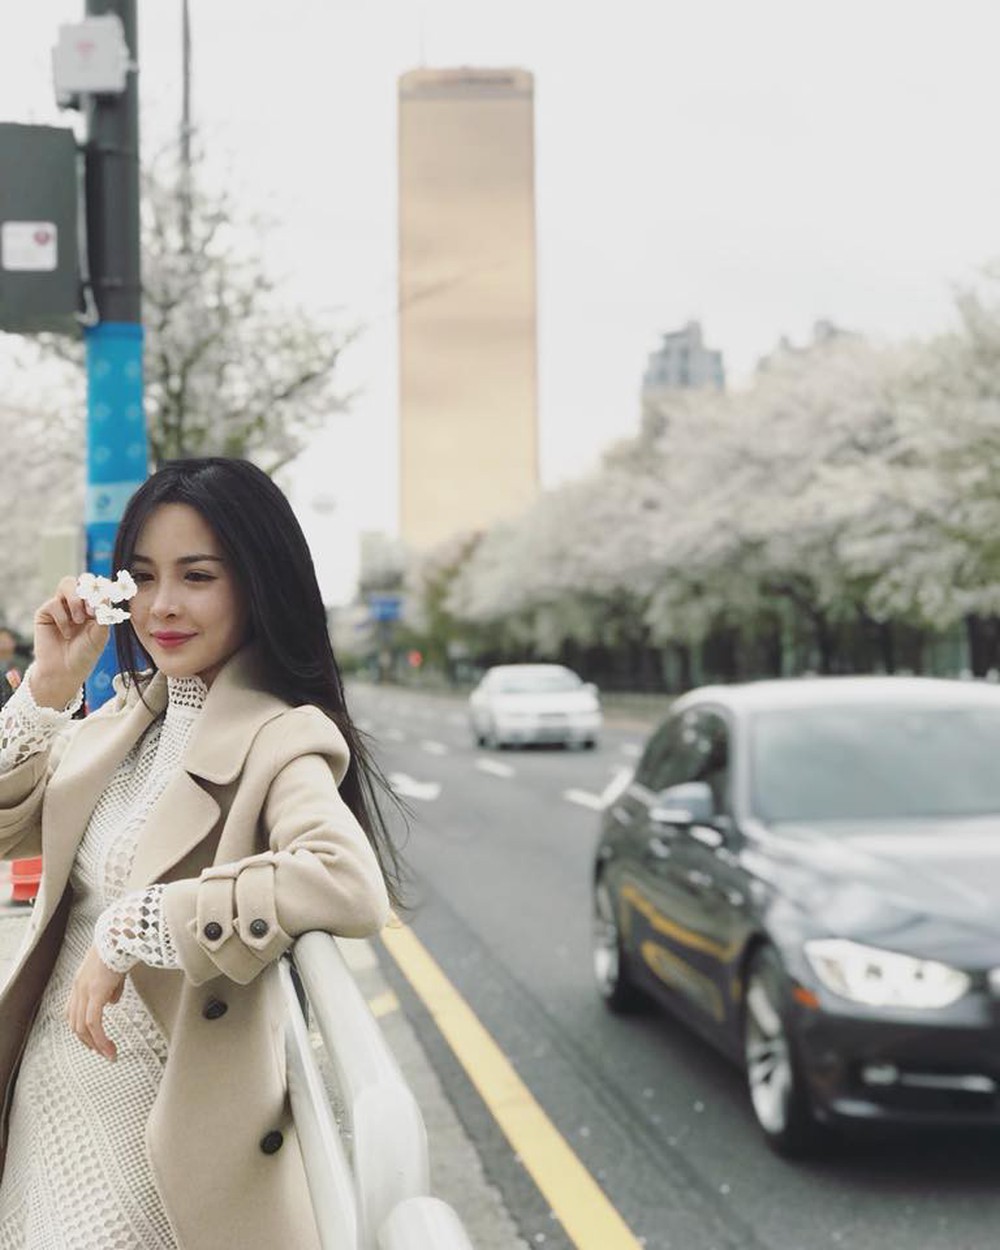 Hot girl thẩm mỹ Vũ Thanh Quỳnh sau 4 năm thay diện mạo đổi cuộc đời: Đã giàu có hơn, vẫn lẻ bóng đợi chân ái - Ảnh 29.